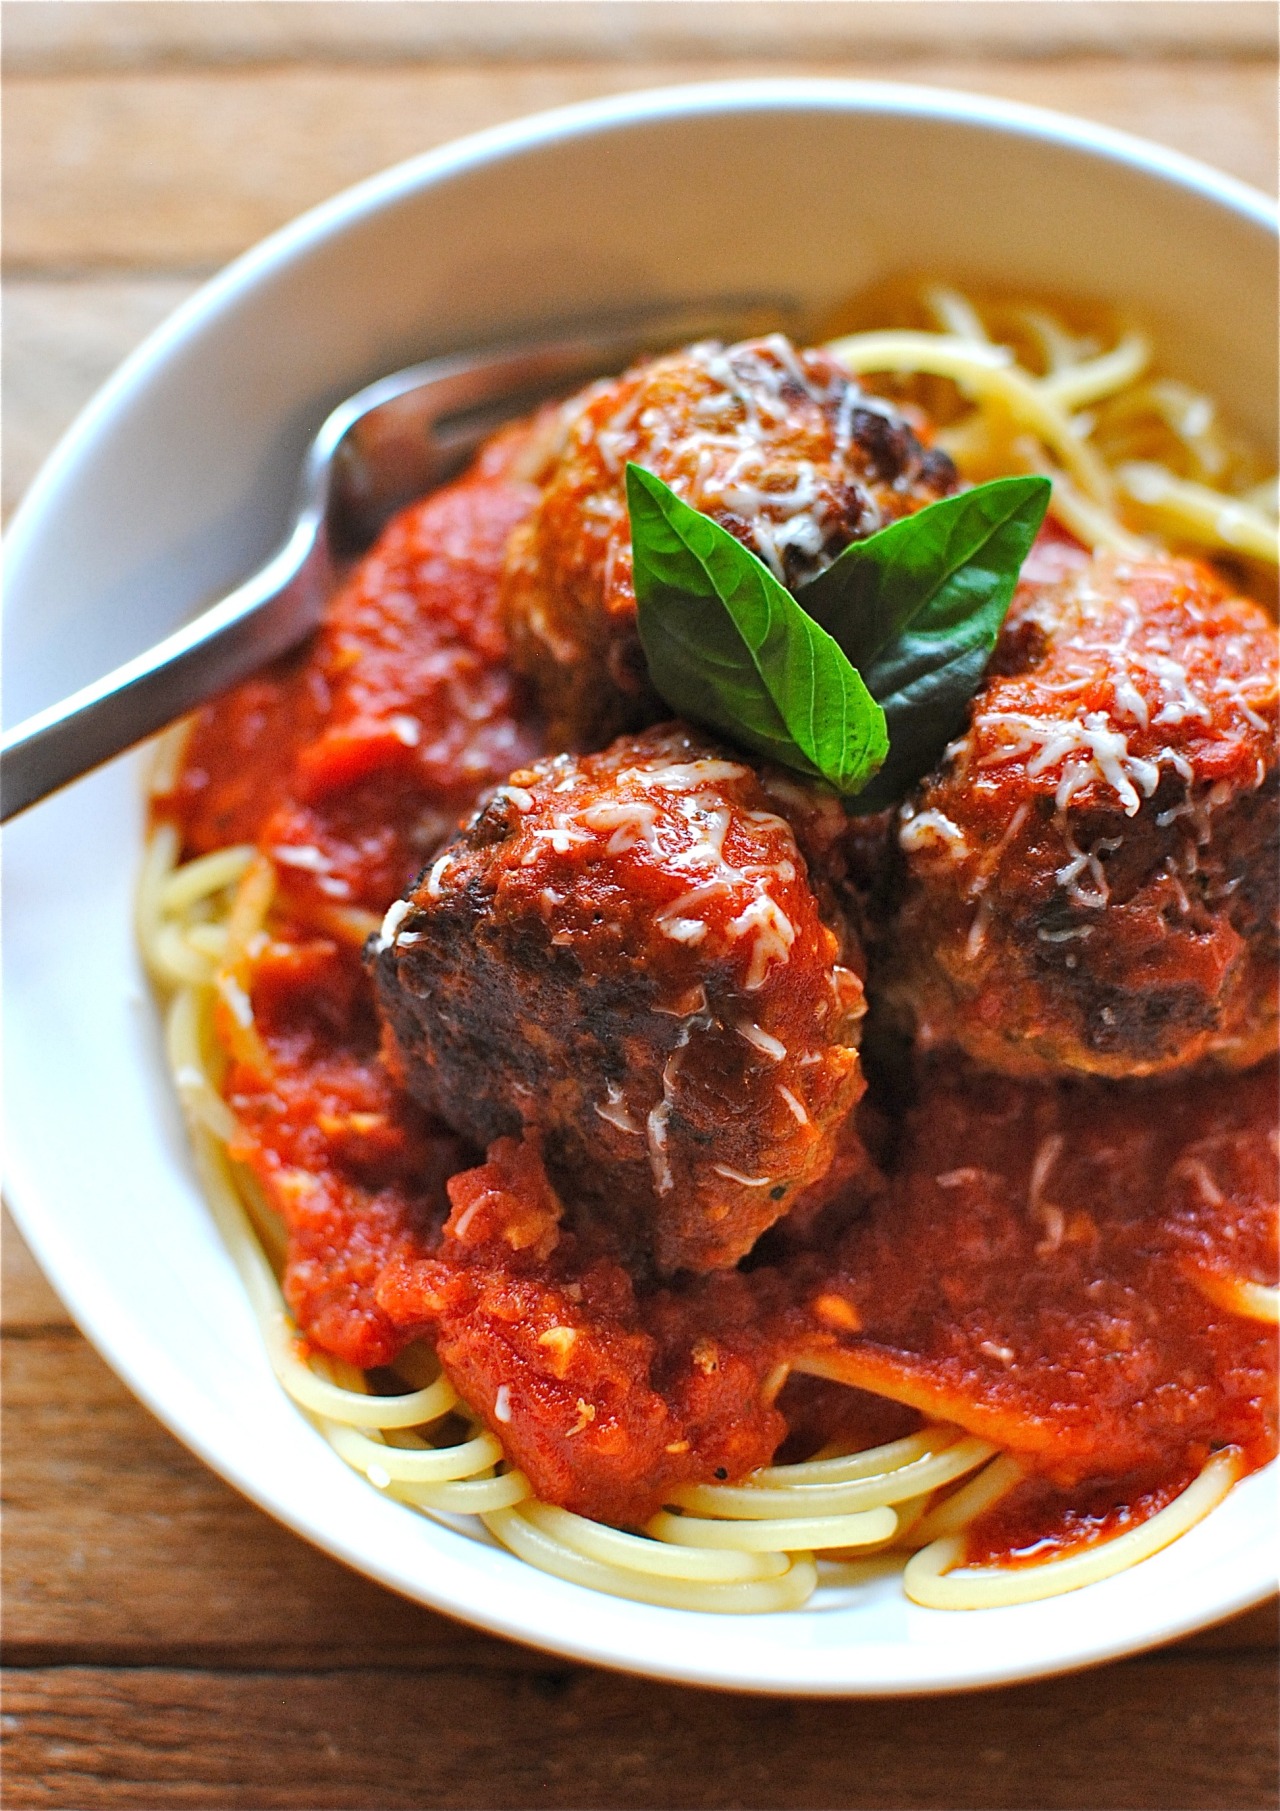 Recipe: Spaghetti & Meatballs